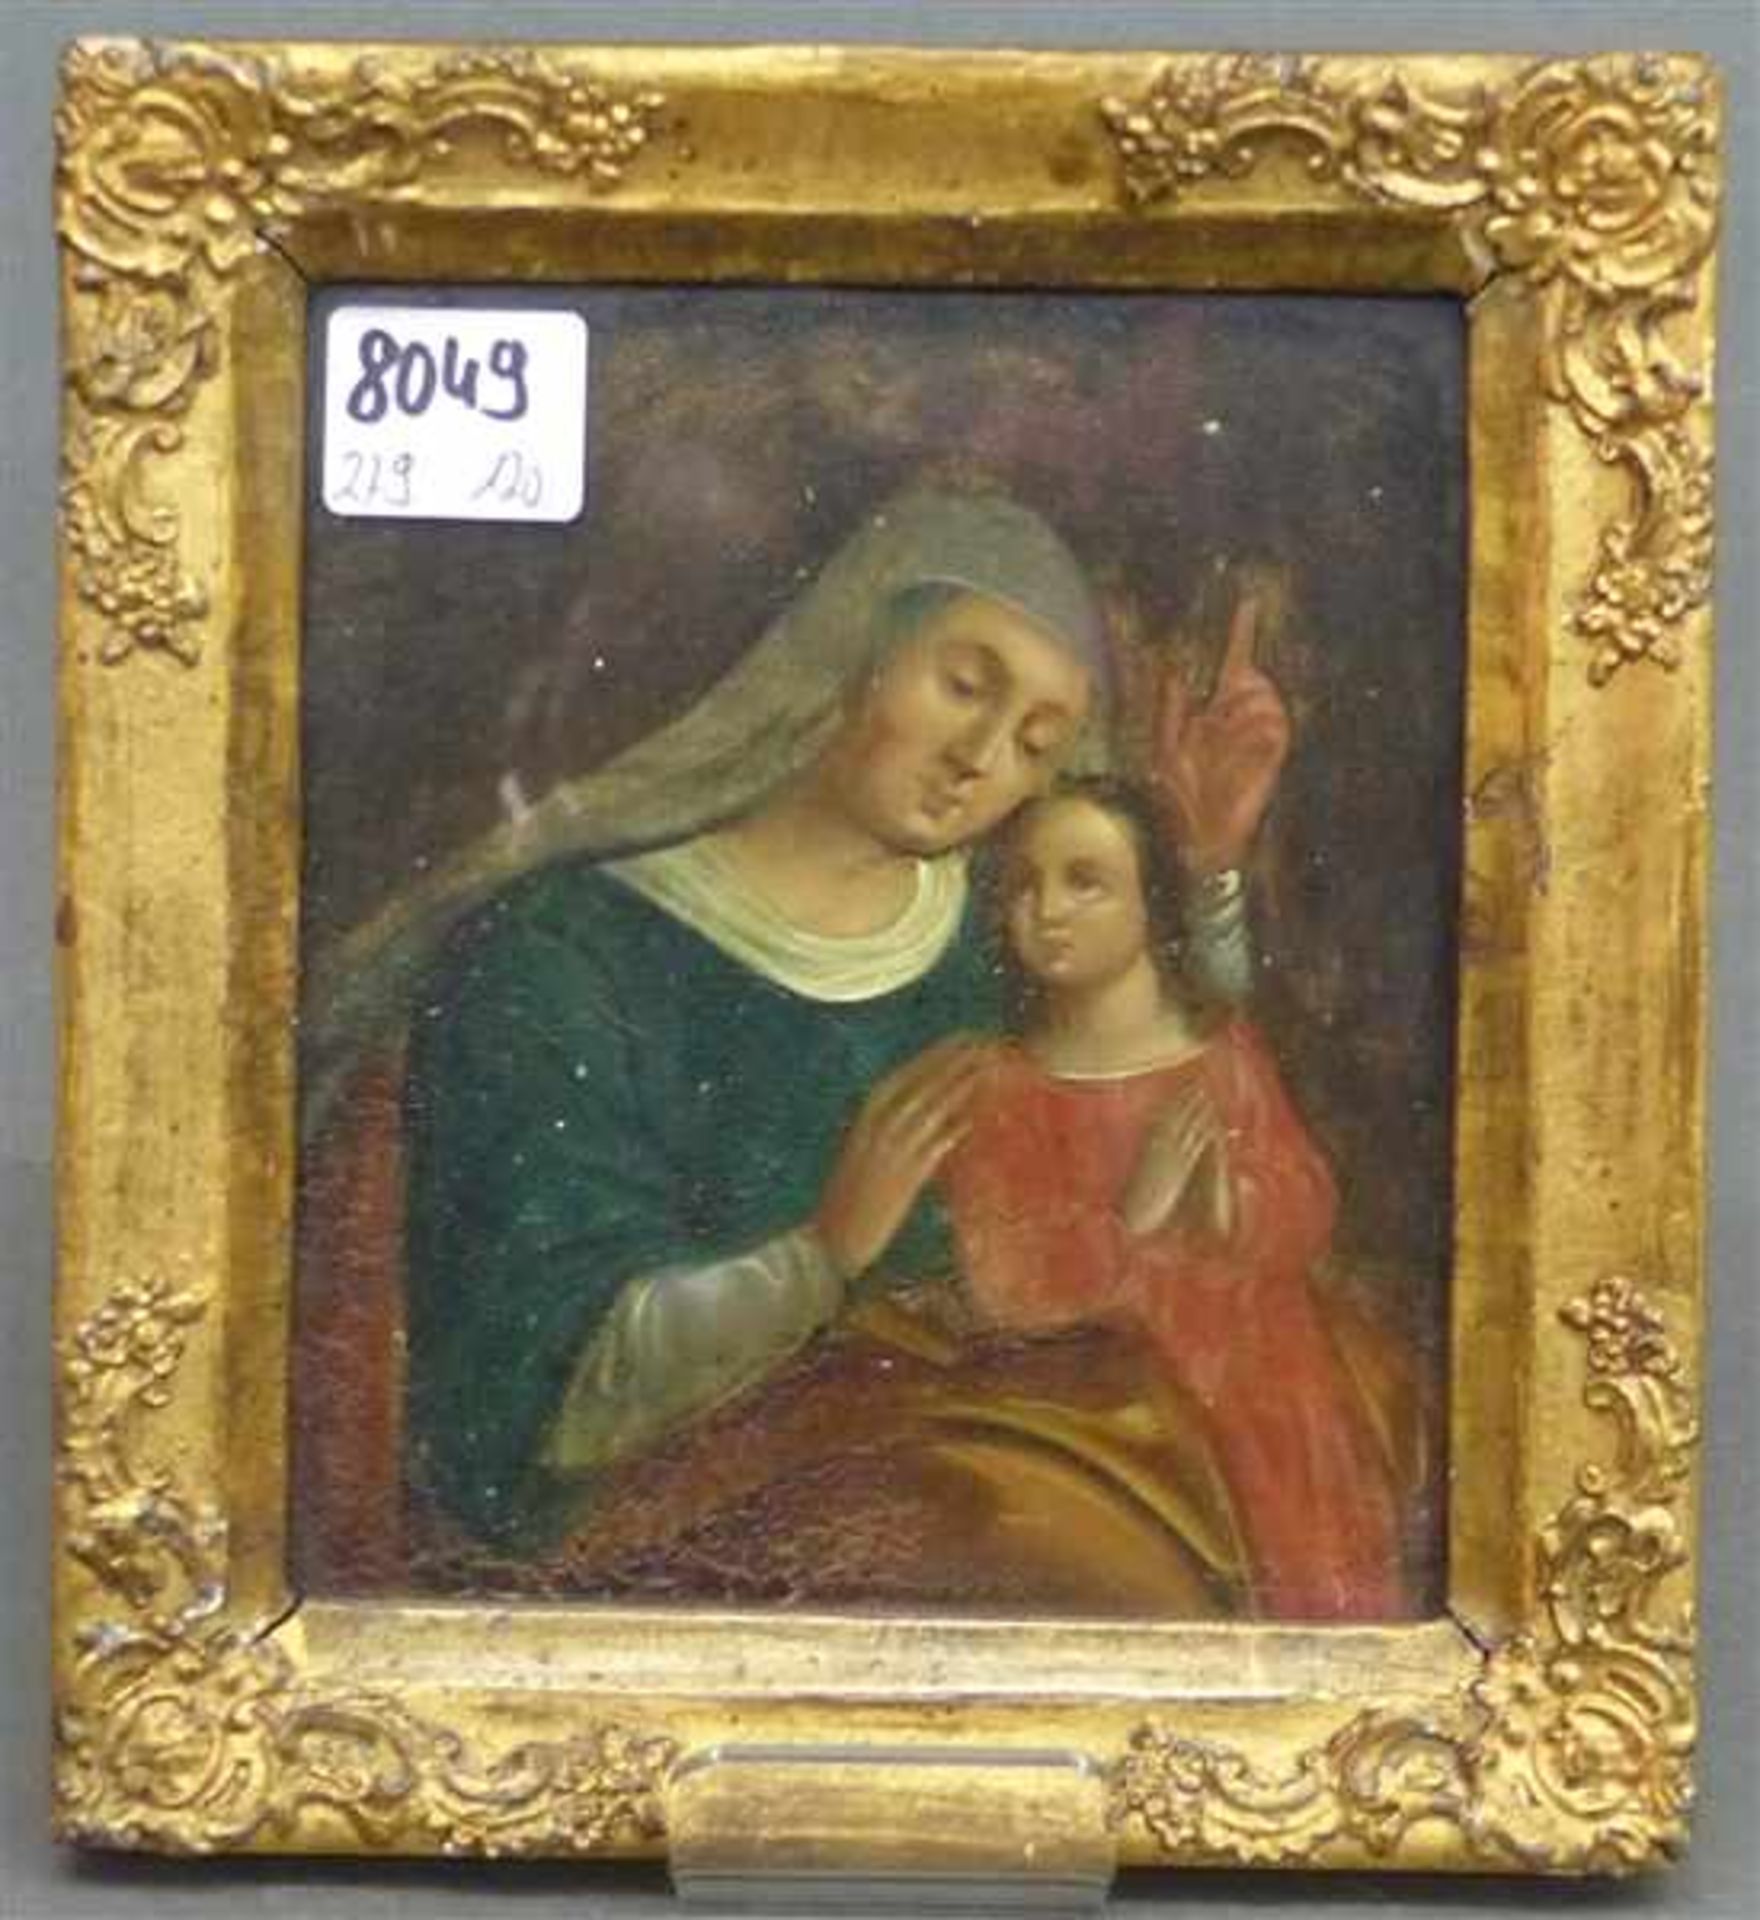 Heiligenmalerei, um 1800 Öl auf Metall, Madonna mit dem betenden Jesusknaben, 12x10,5 cm, im